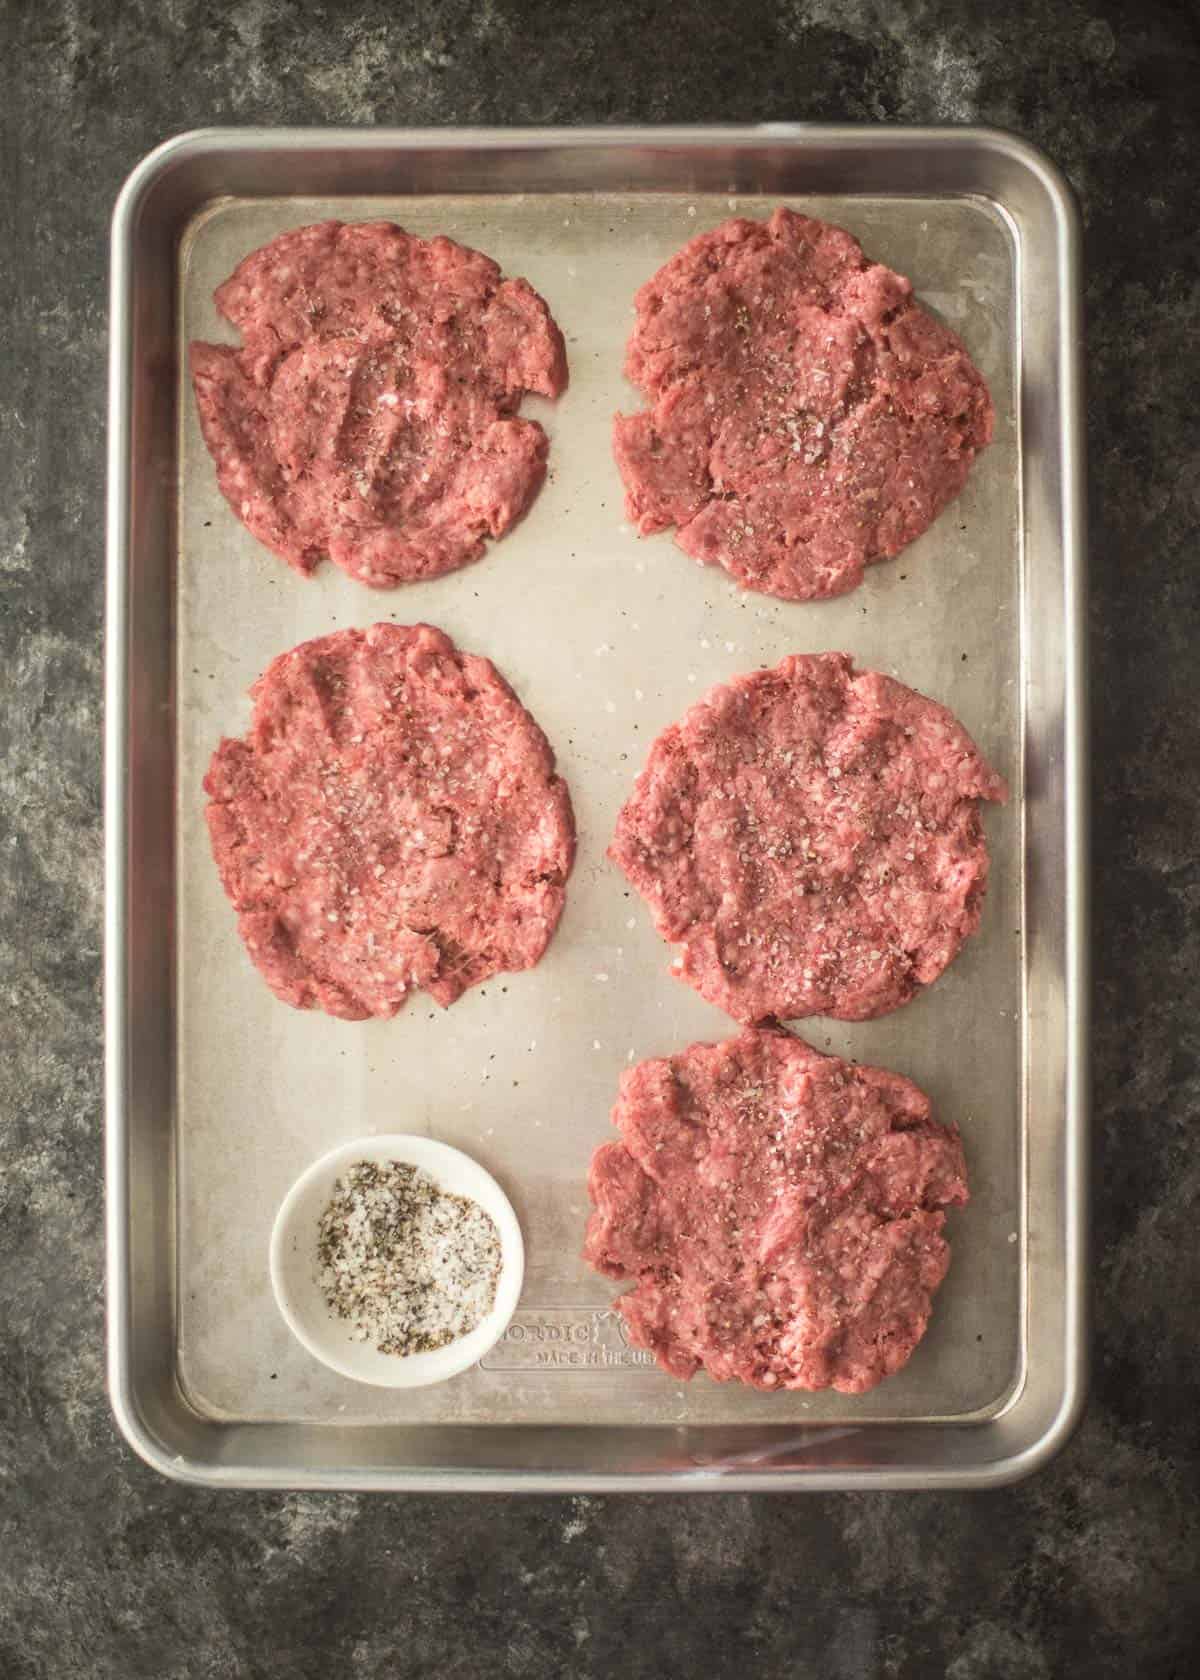 raw hamburger patties on a sheet pan